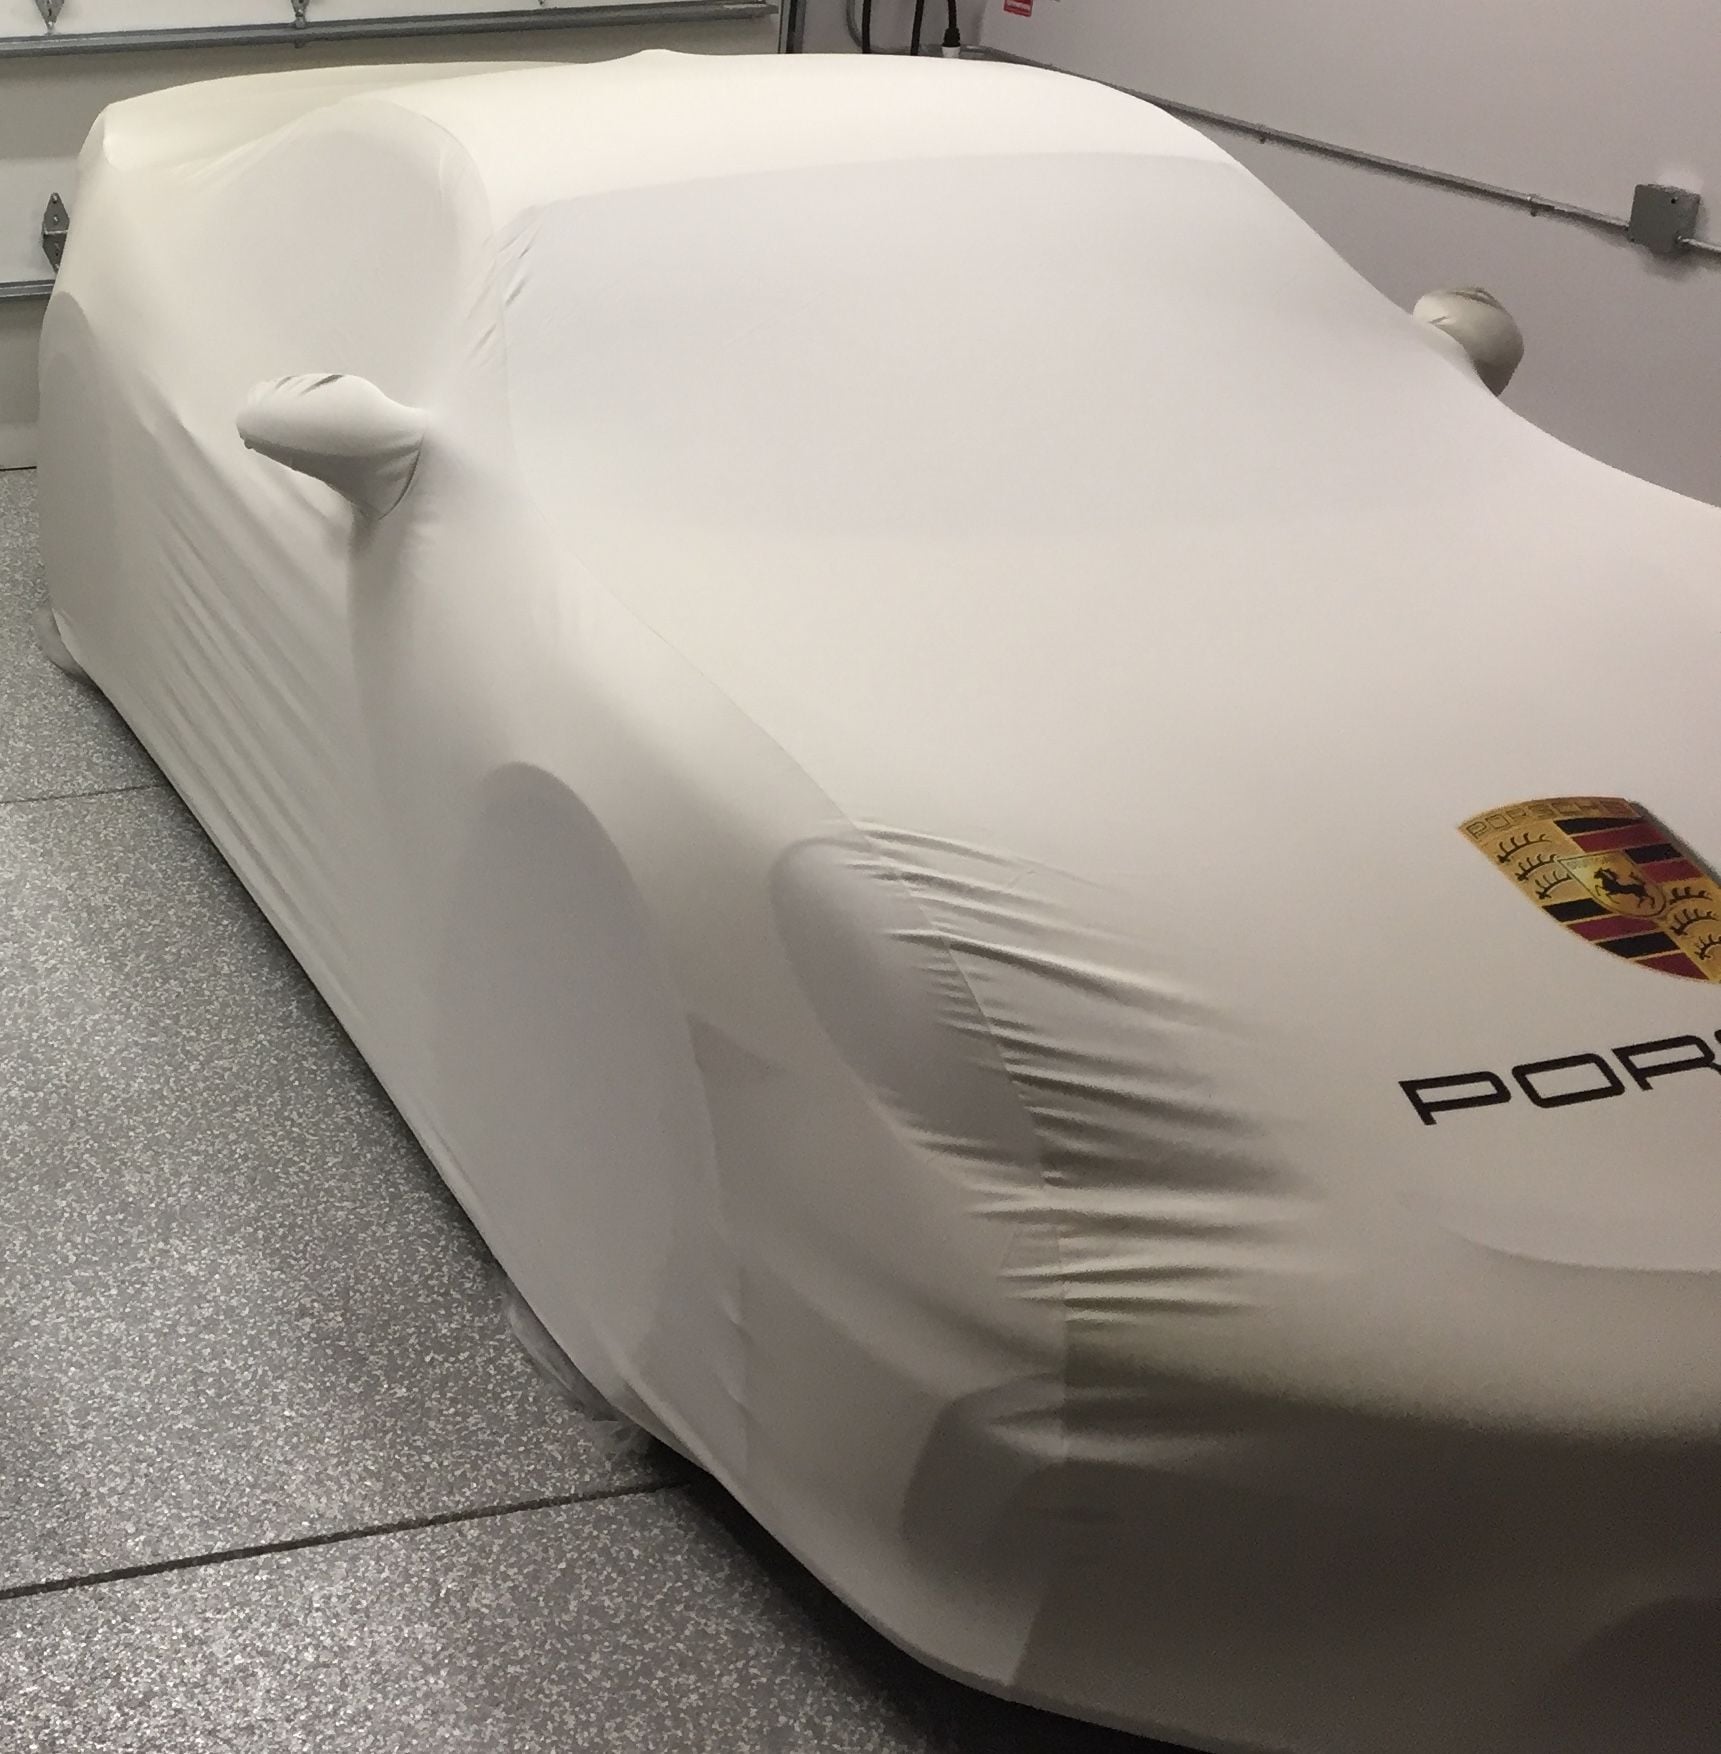 Accessories - Porsche 2016 GT4 (981 ) Premium Indoor Cover - Genuine in Excellent Condition USED - Used - Granada Hills, CA 91344, United States